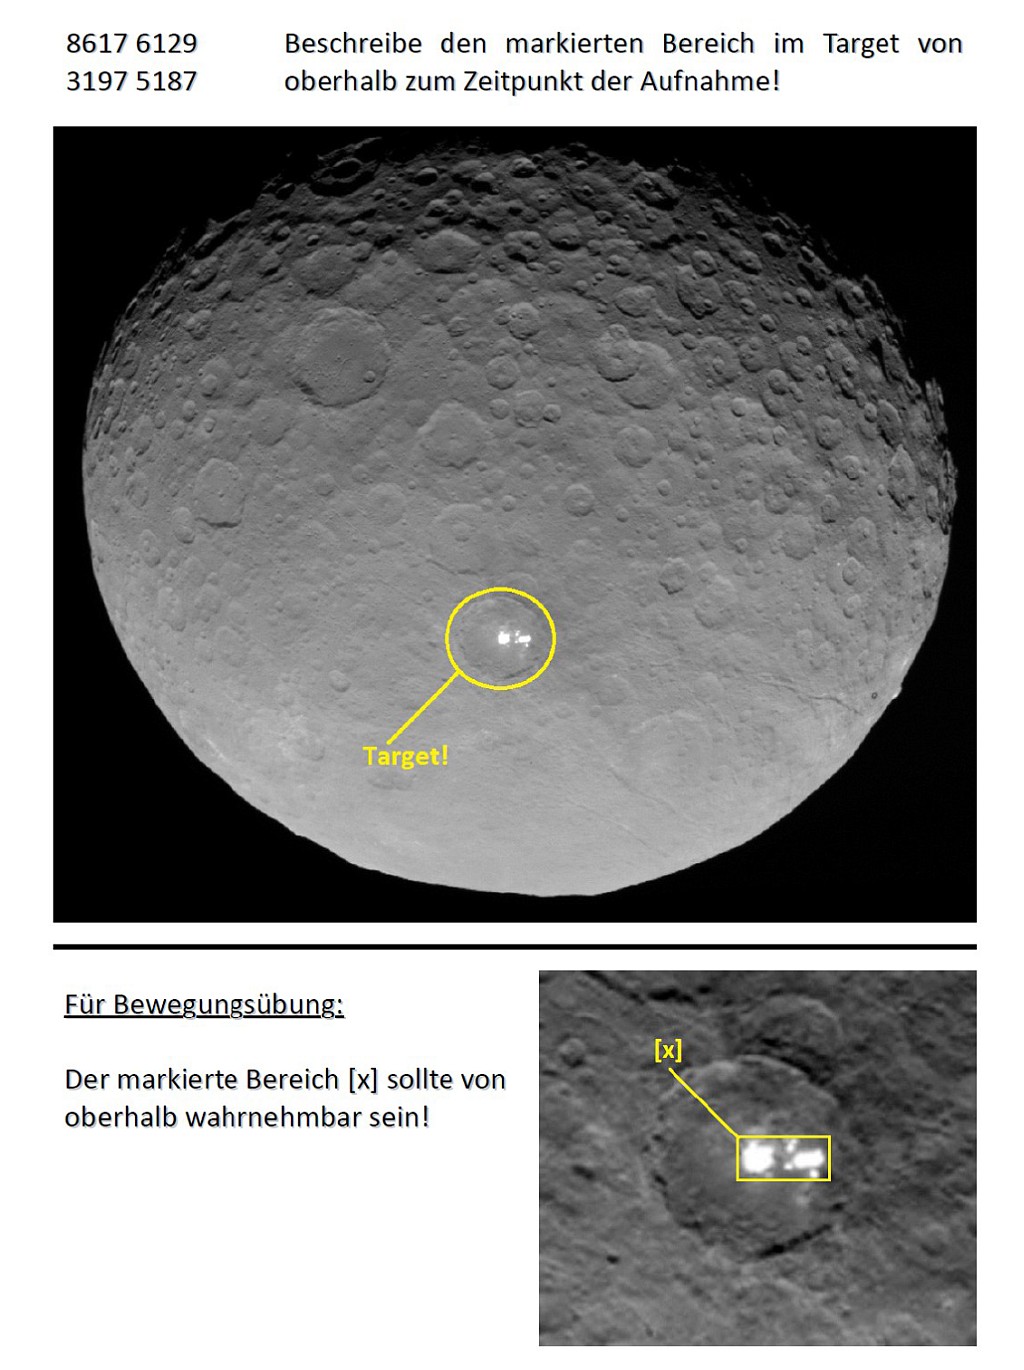 RV - Ceres (weiße Flecken) - Target